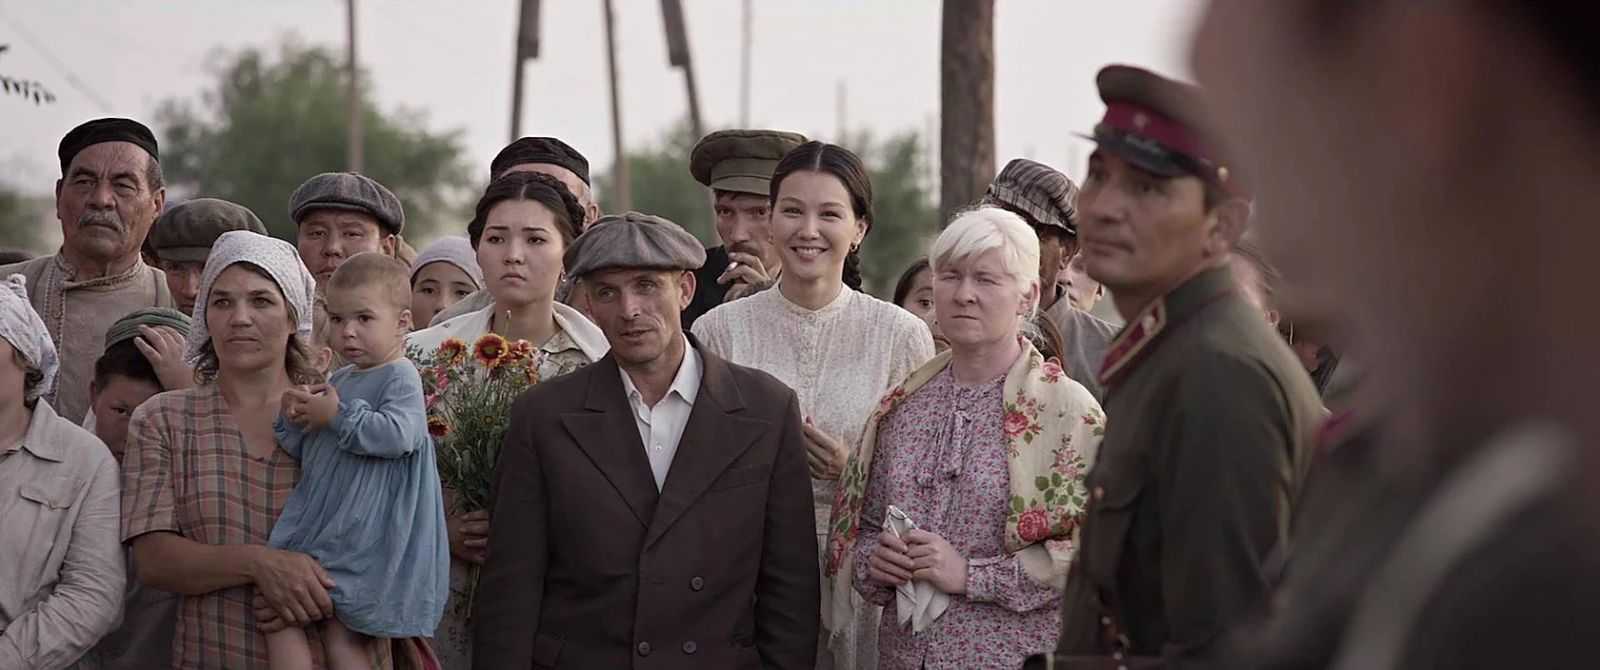 Казахстанские фильмы смотреть онлайн бесплатно в хорошем качестве